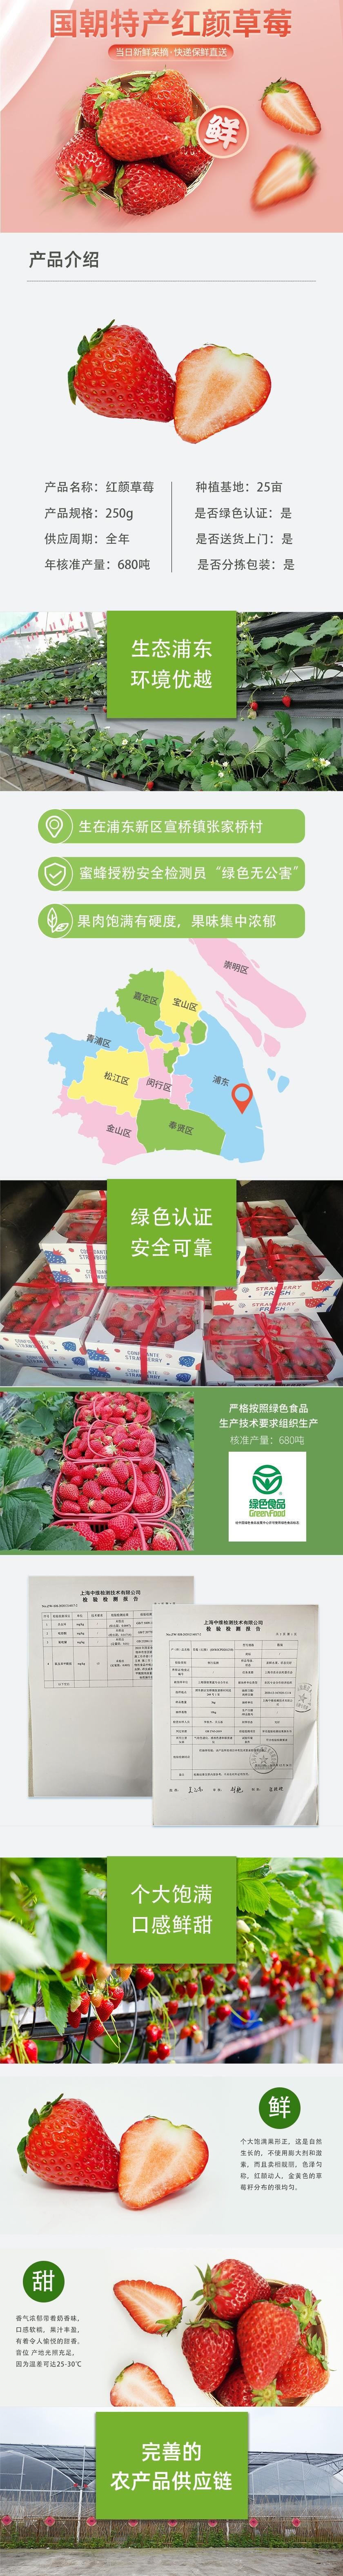 国朝草莓详情页.jpg